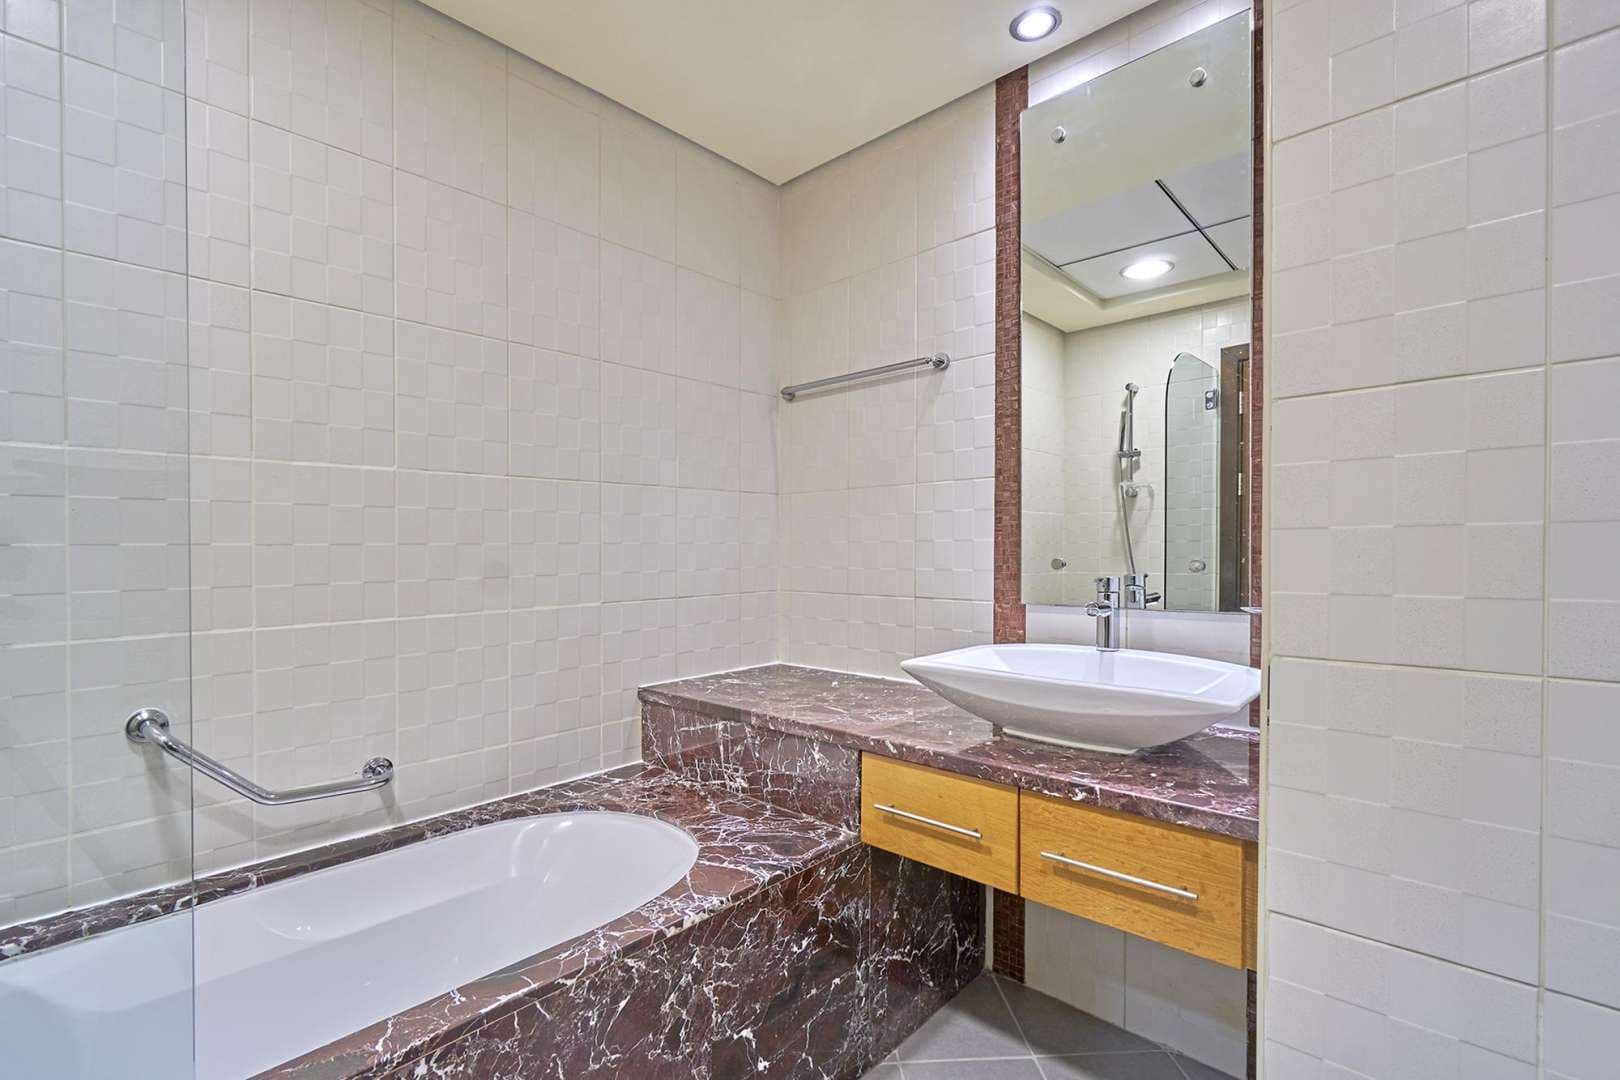 2 Bedroom Apartment For Rent Murjan Lp04925 13d46e138afa5000.jpg